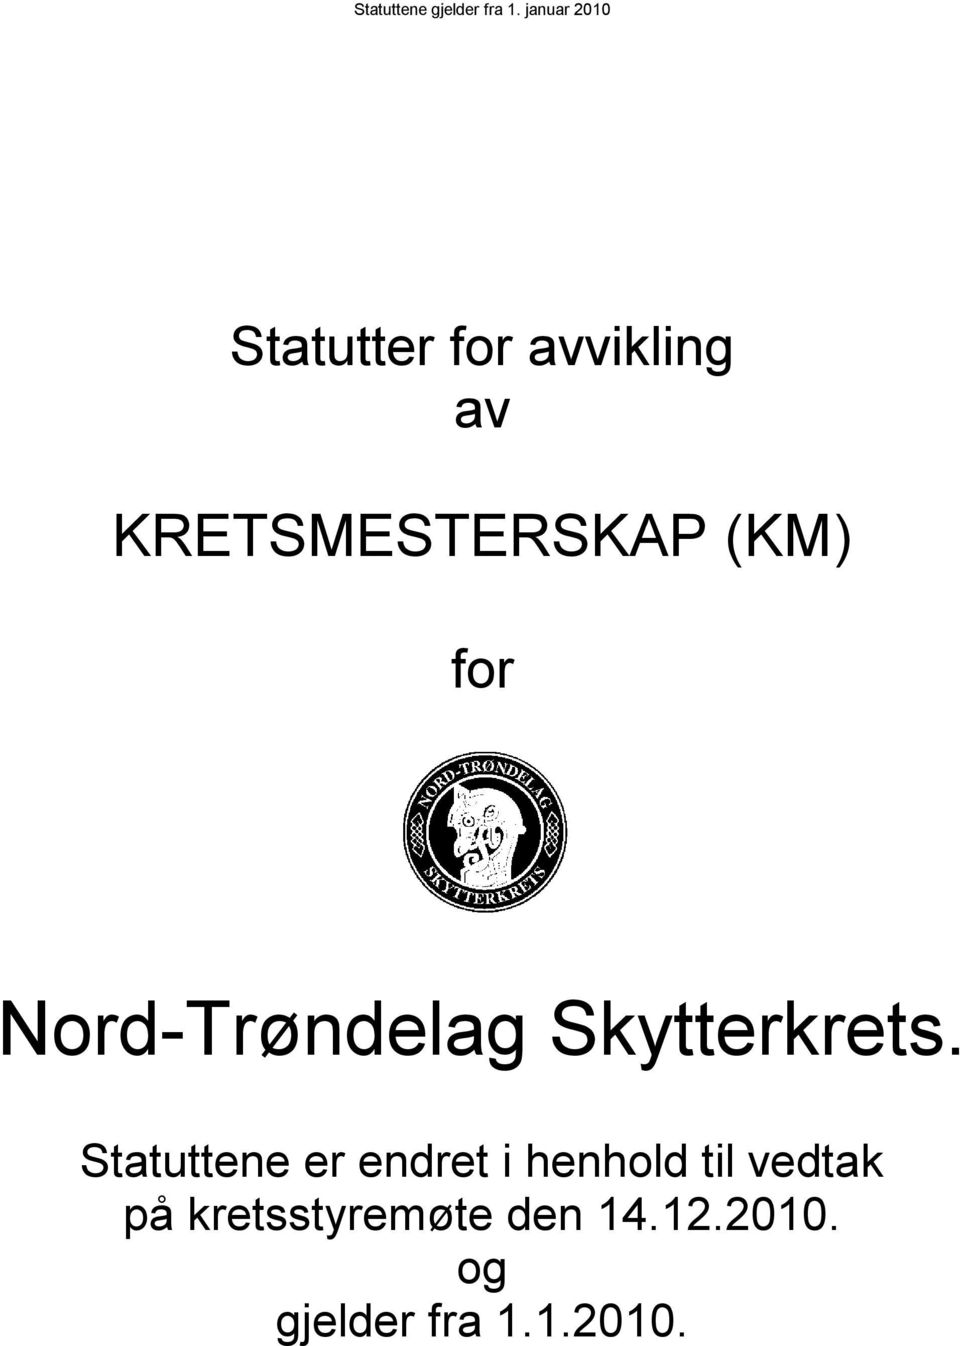 (KM) for Nord-Trøndelag Skytterkrets.